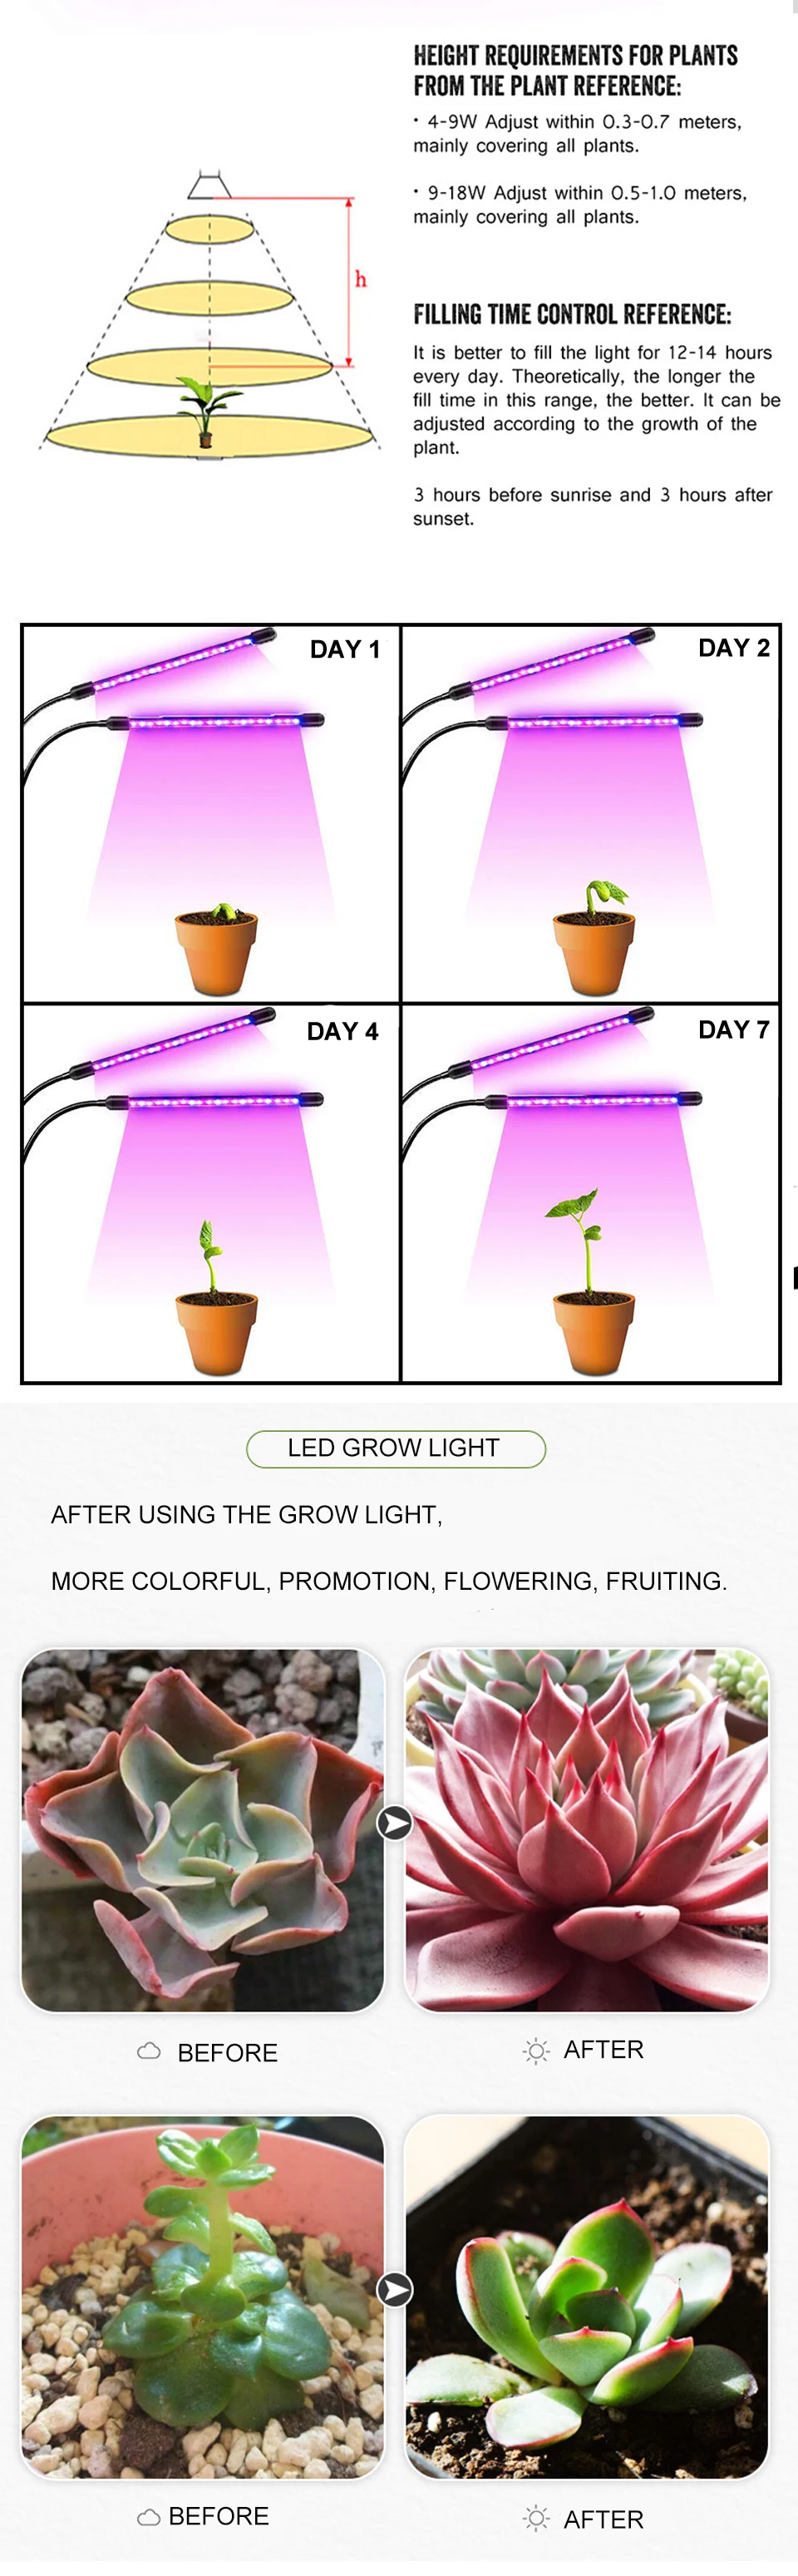 Светодиодный светильник для растений, фито-лампа для растений, полный спектр, фитолампия для саженцев, фитоламп, USB кабель с контроллером, Крытый тент для выращивания растений